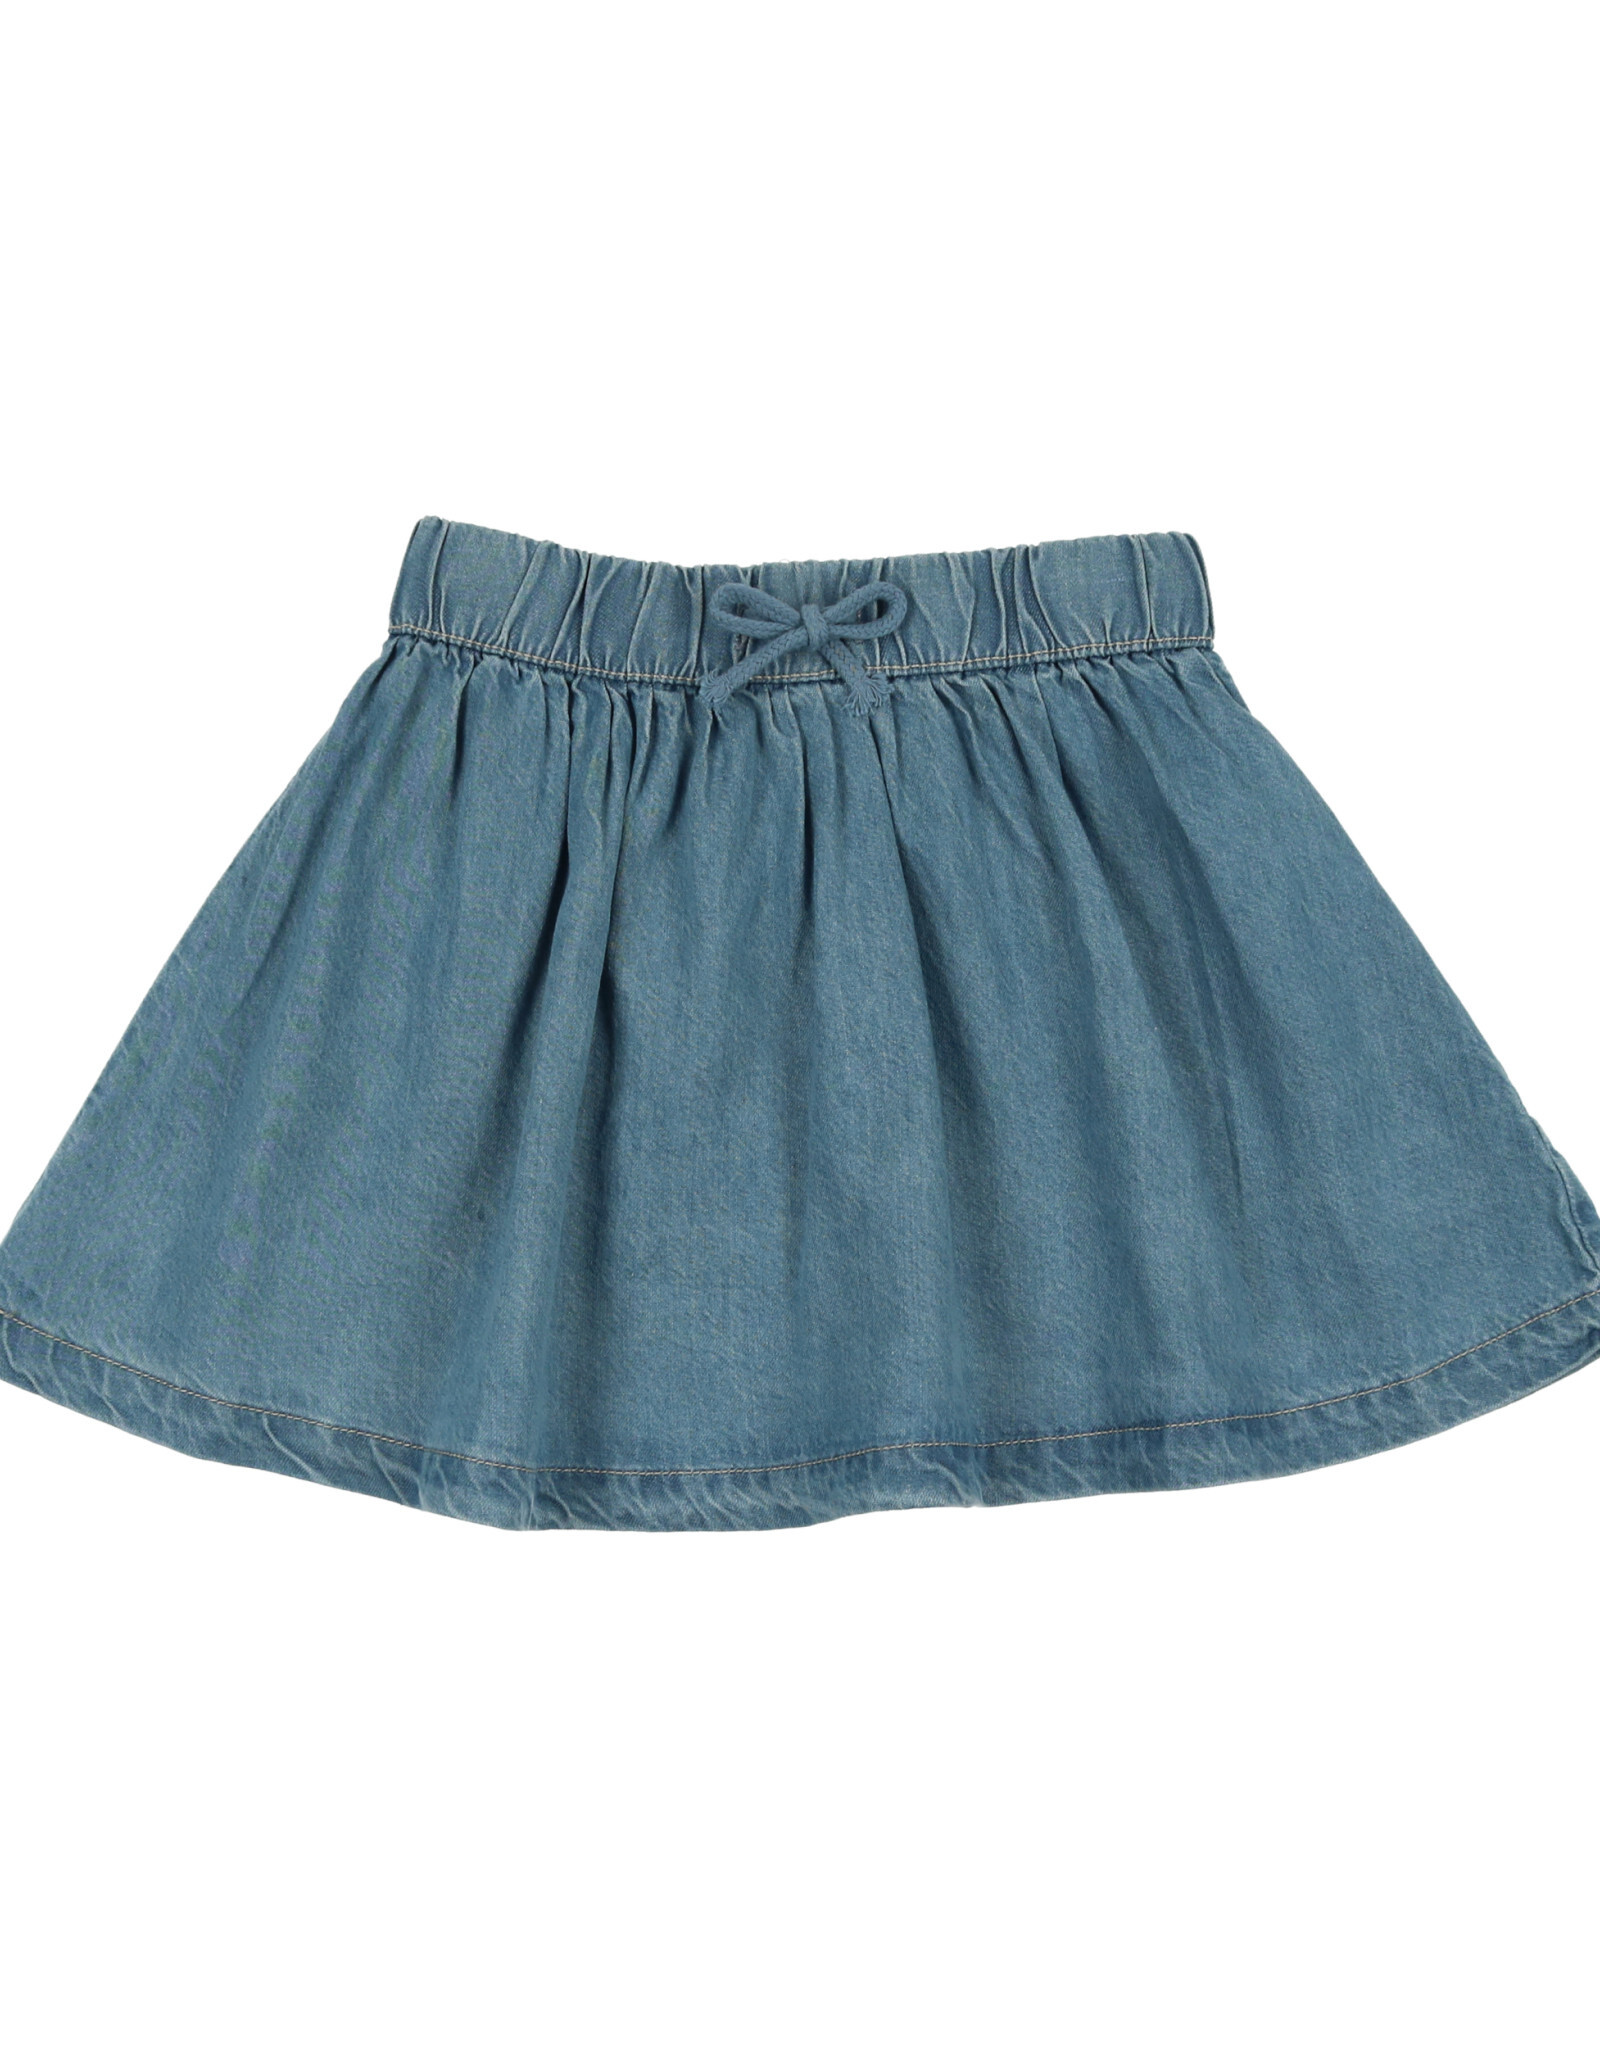 Lil Leggs Denim Tencil Circle Skirt